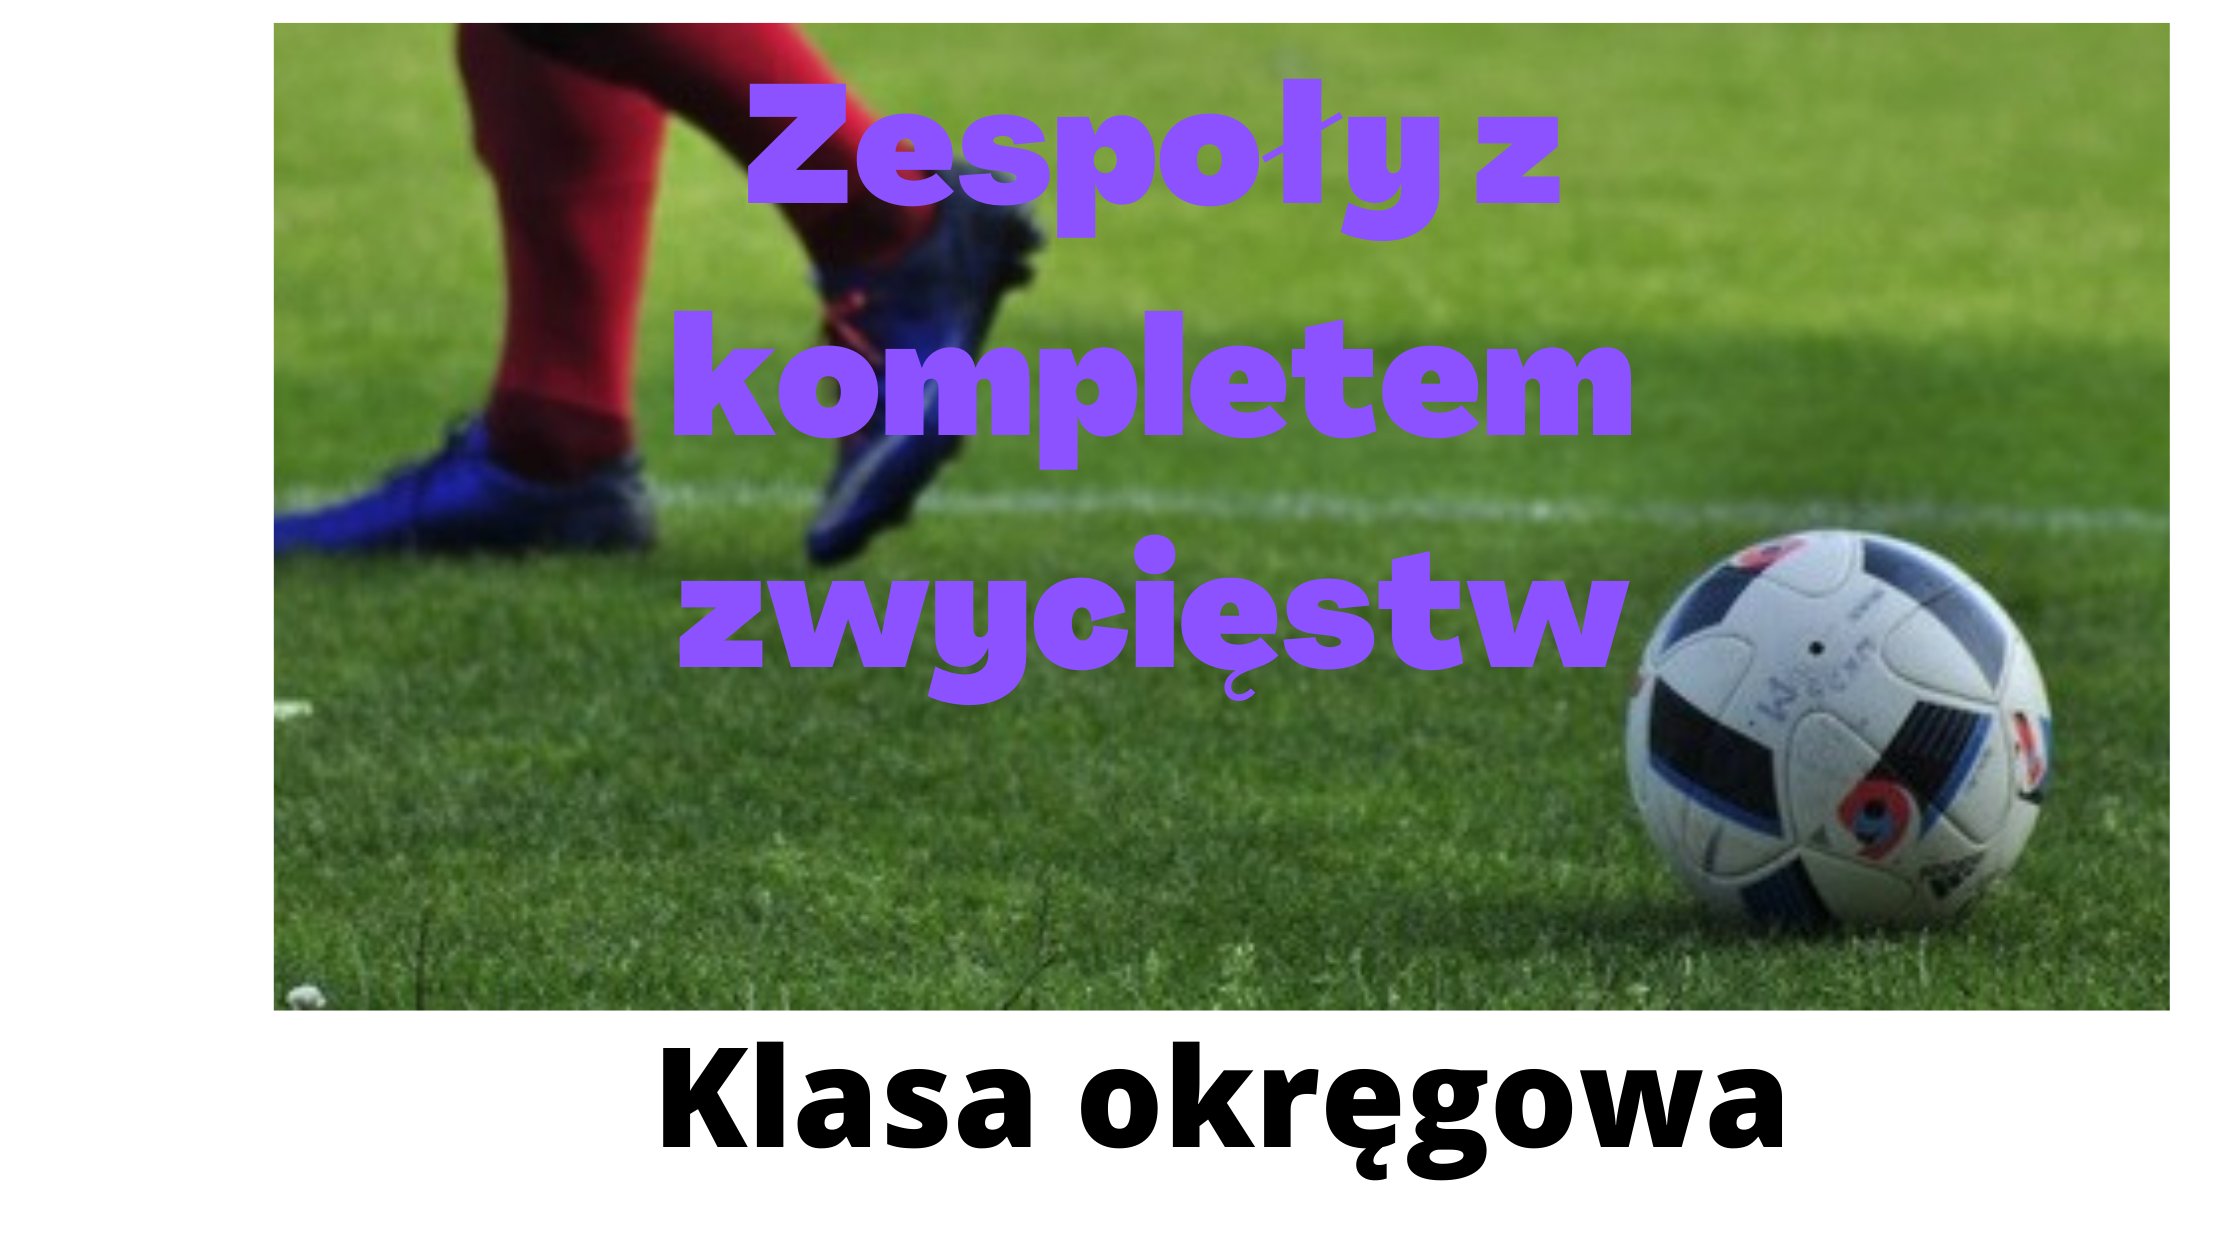 Dziewięć zespołów w Polsce ma na koncie komplet zwycięstw w rozgrywkach klasy okręgowej w sezonie 2020/21